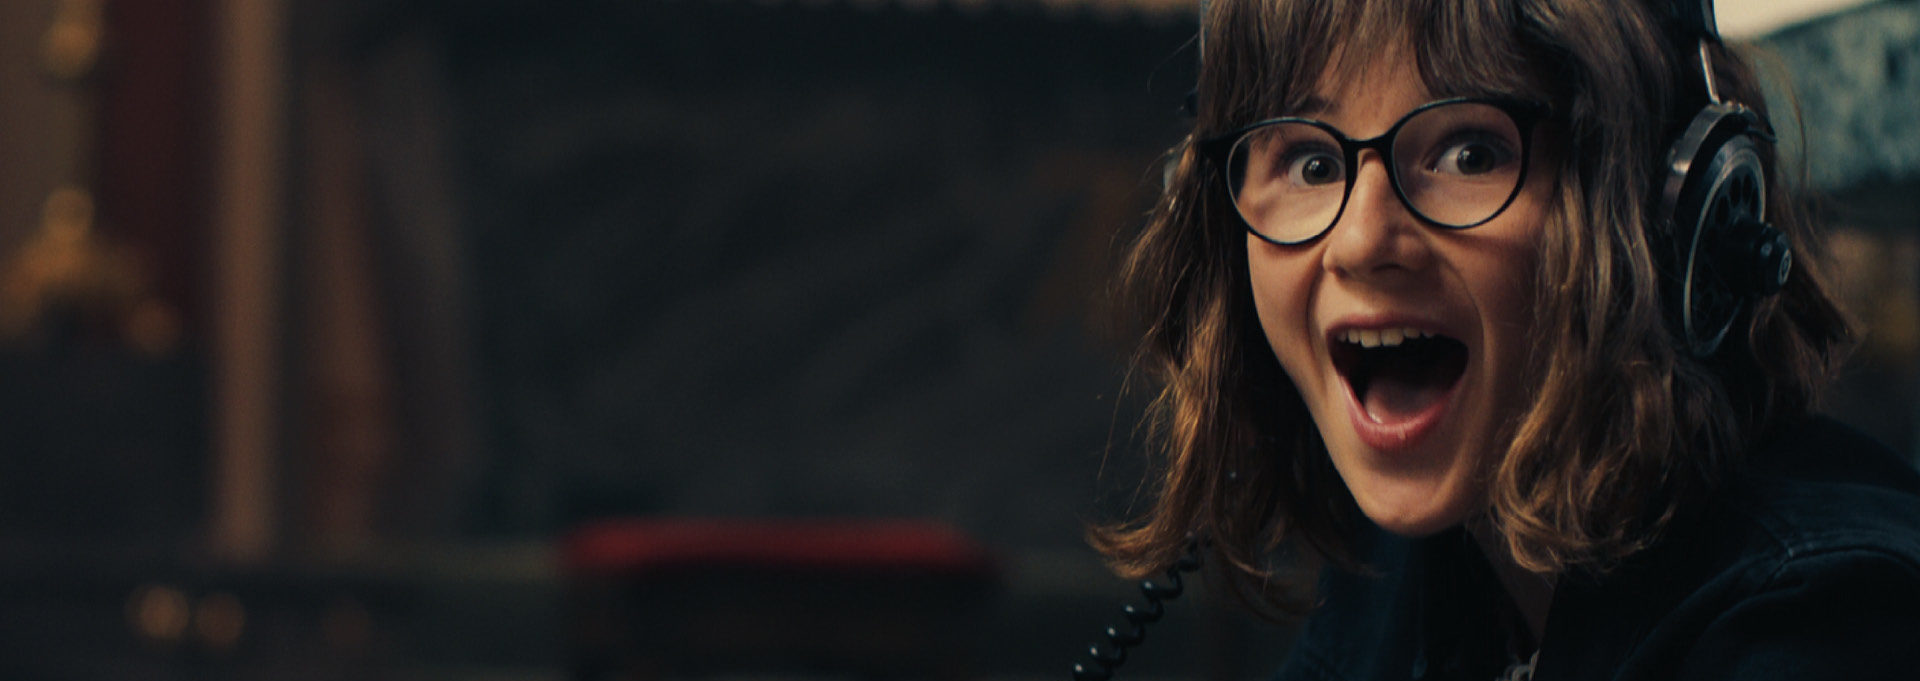 Szenenbild aus dem Film Himbeeren mit Senf zeigtz ein Mädchen mit Brille